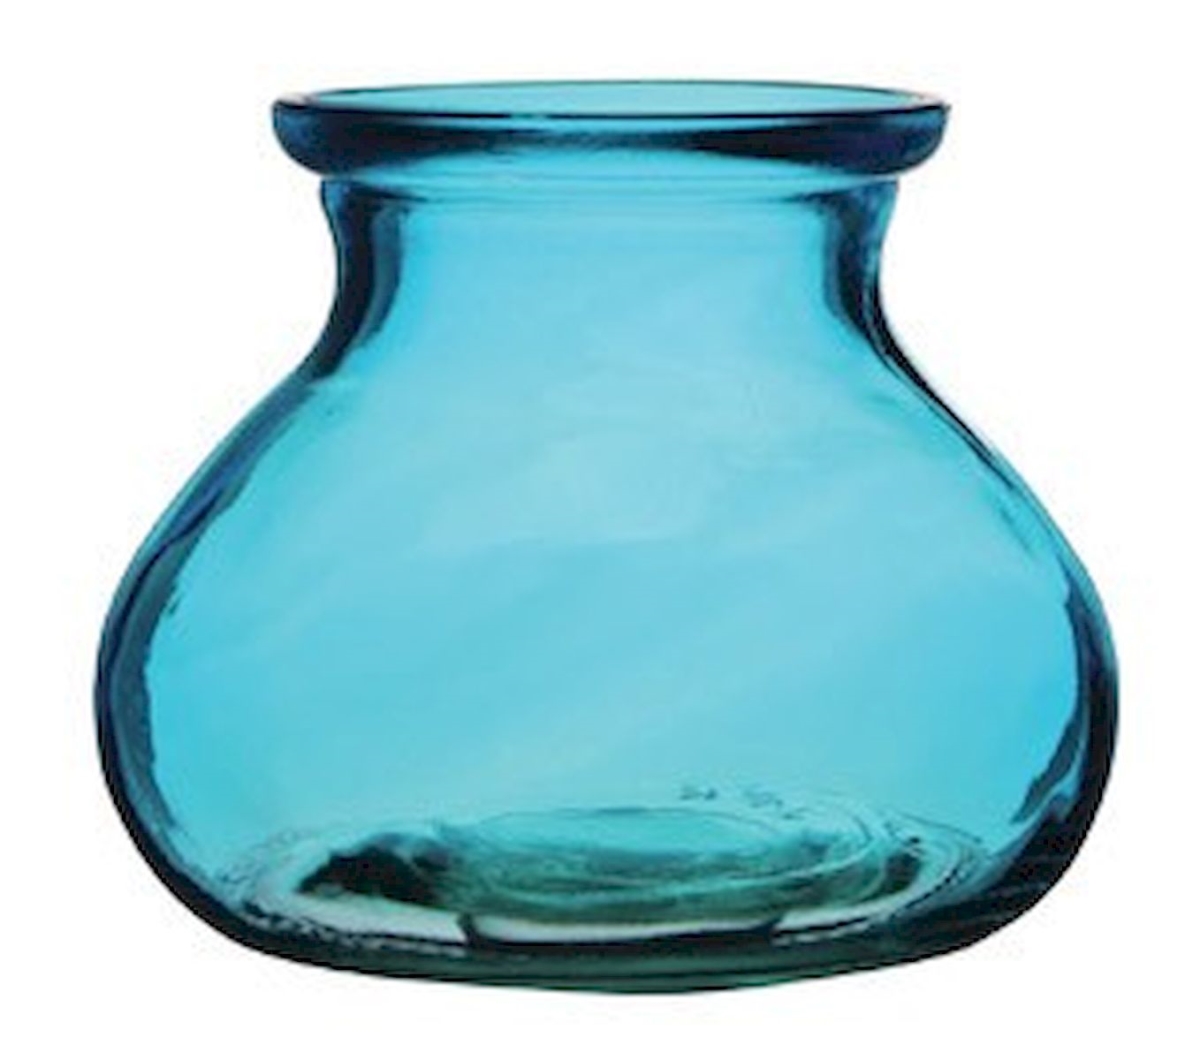 Picture of 212 Main AI-N3030BLU Rosie Posie Vintage Blue Vase